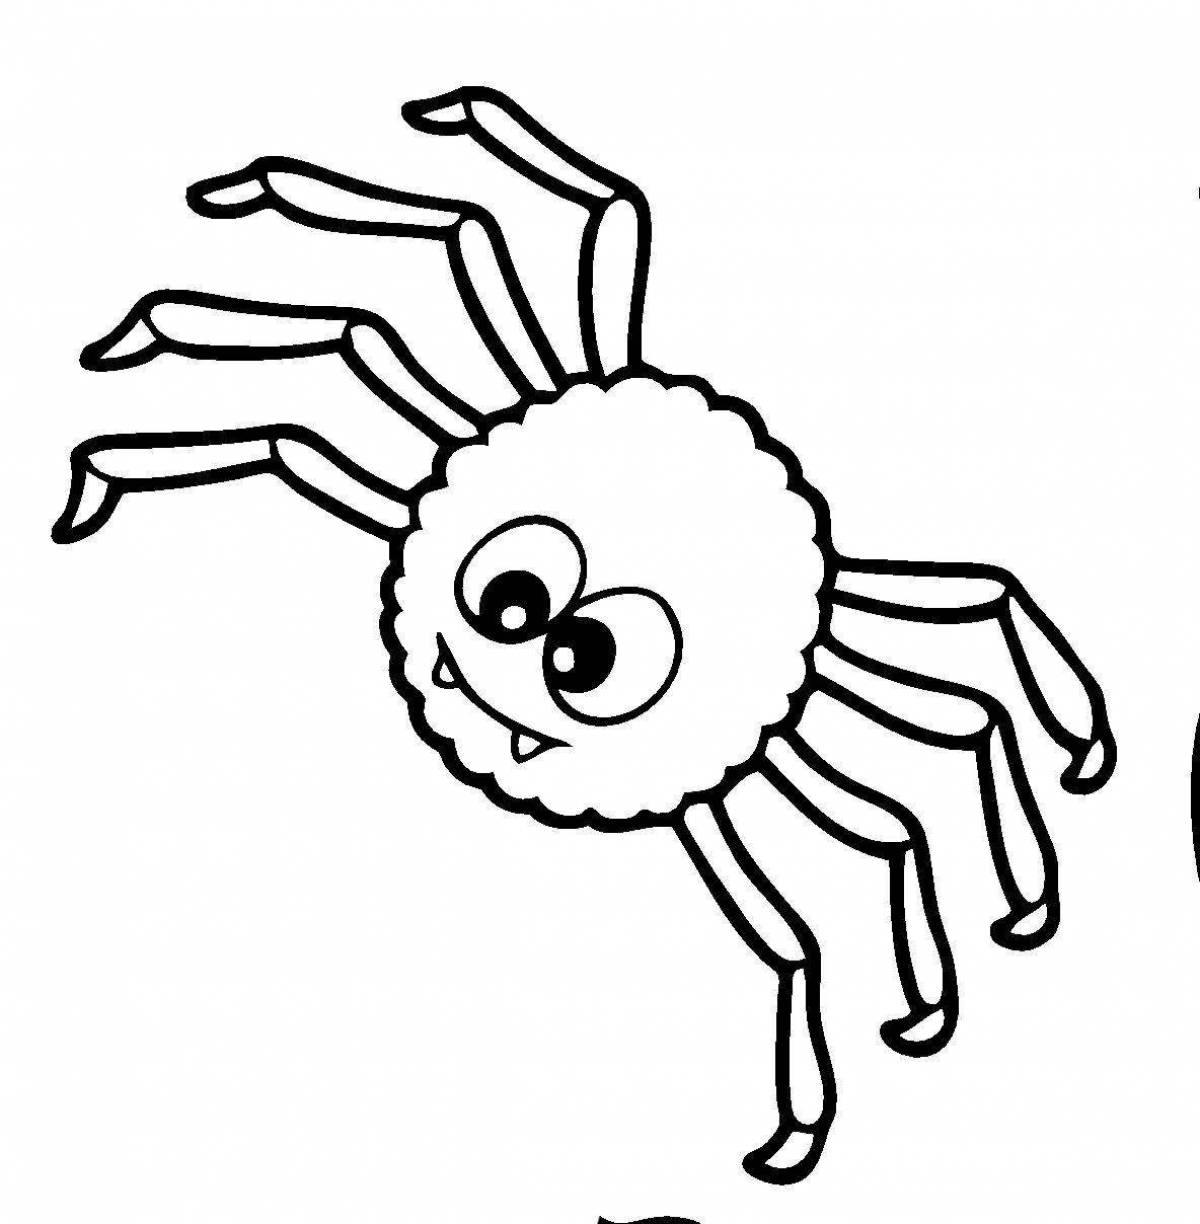 Fun cartoon coloring spider